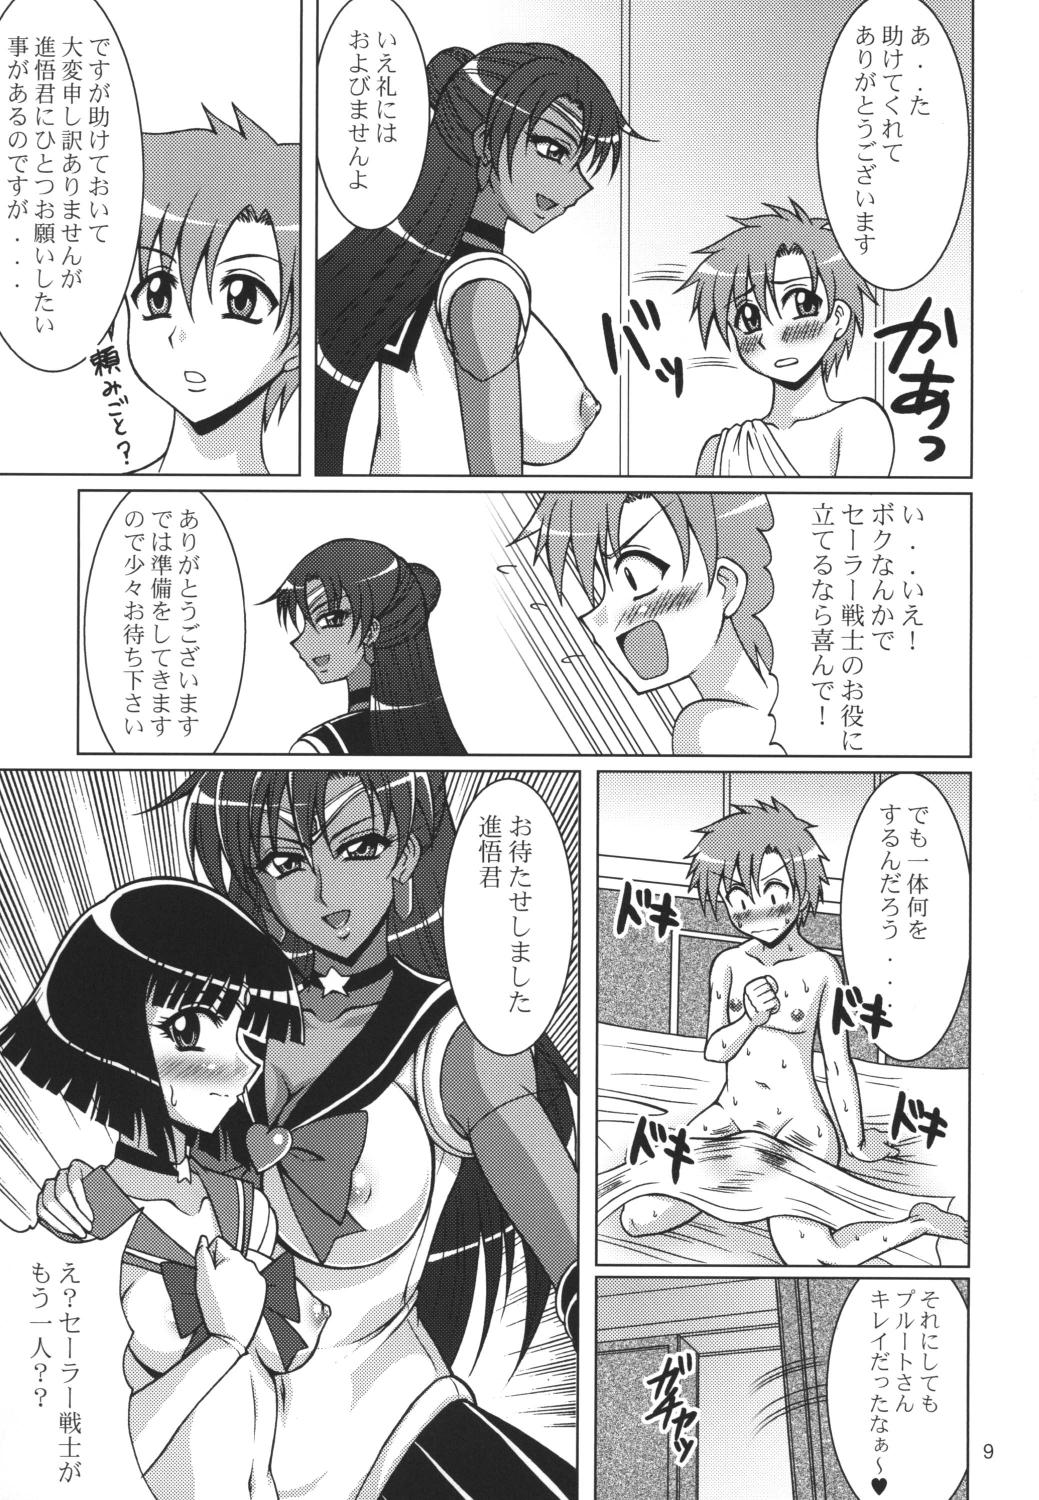 Casado Rojou no Meiousei - Sailor moon Sister - Page 8